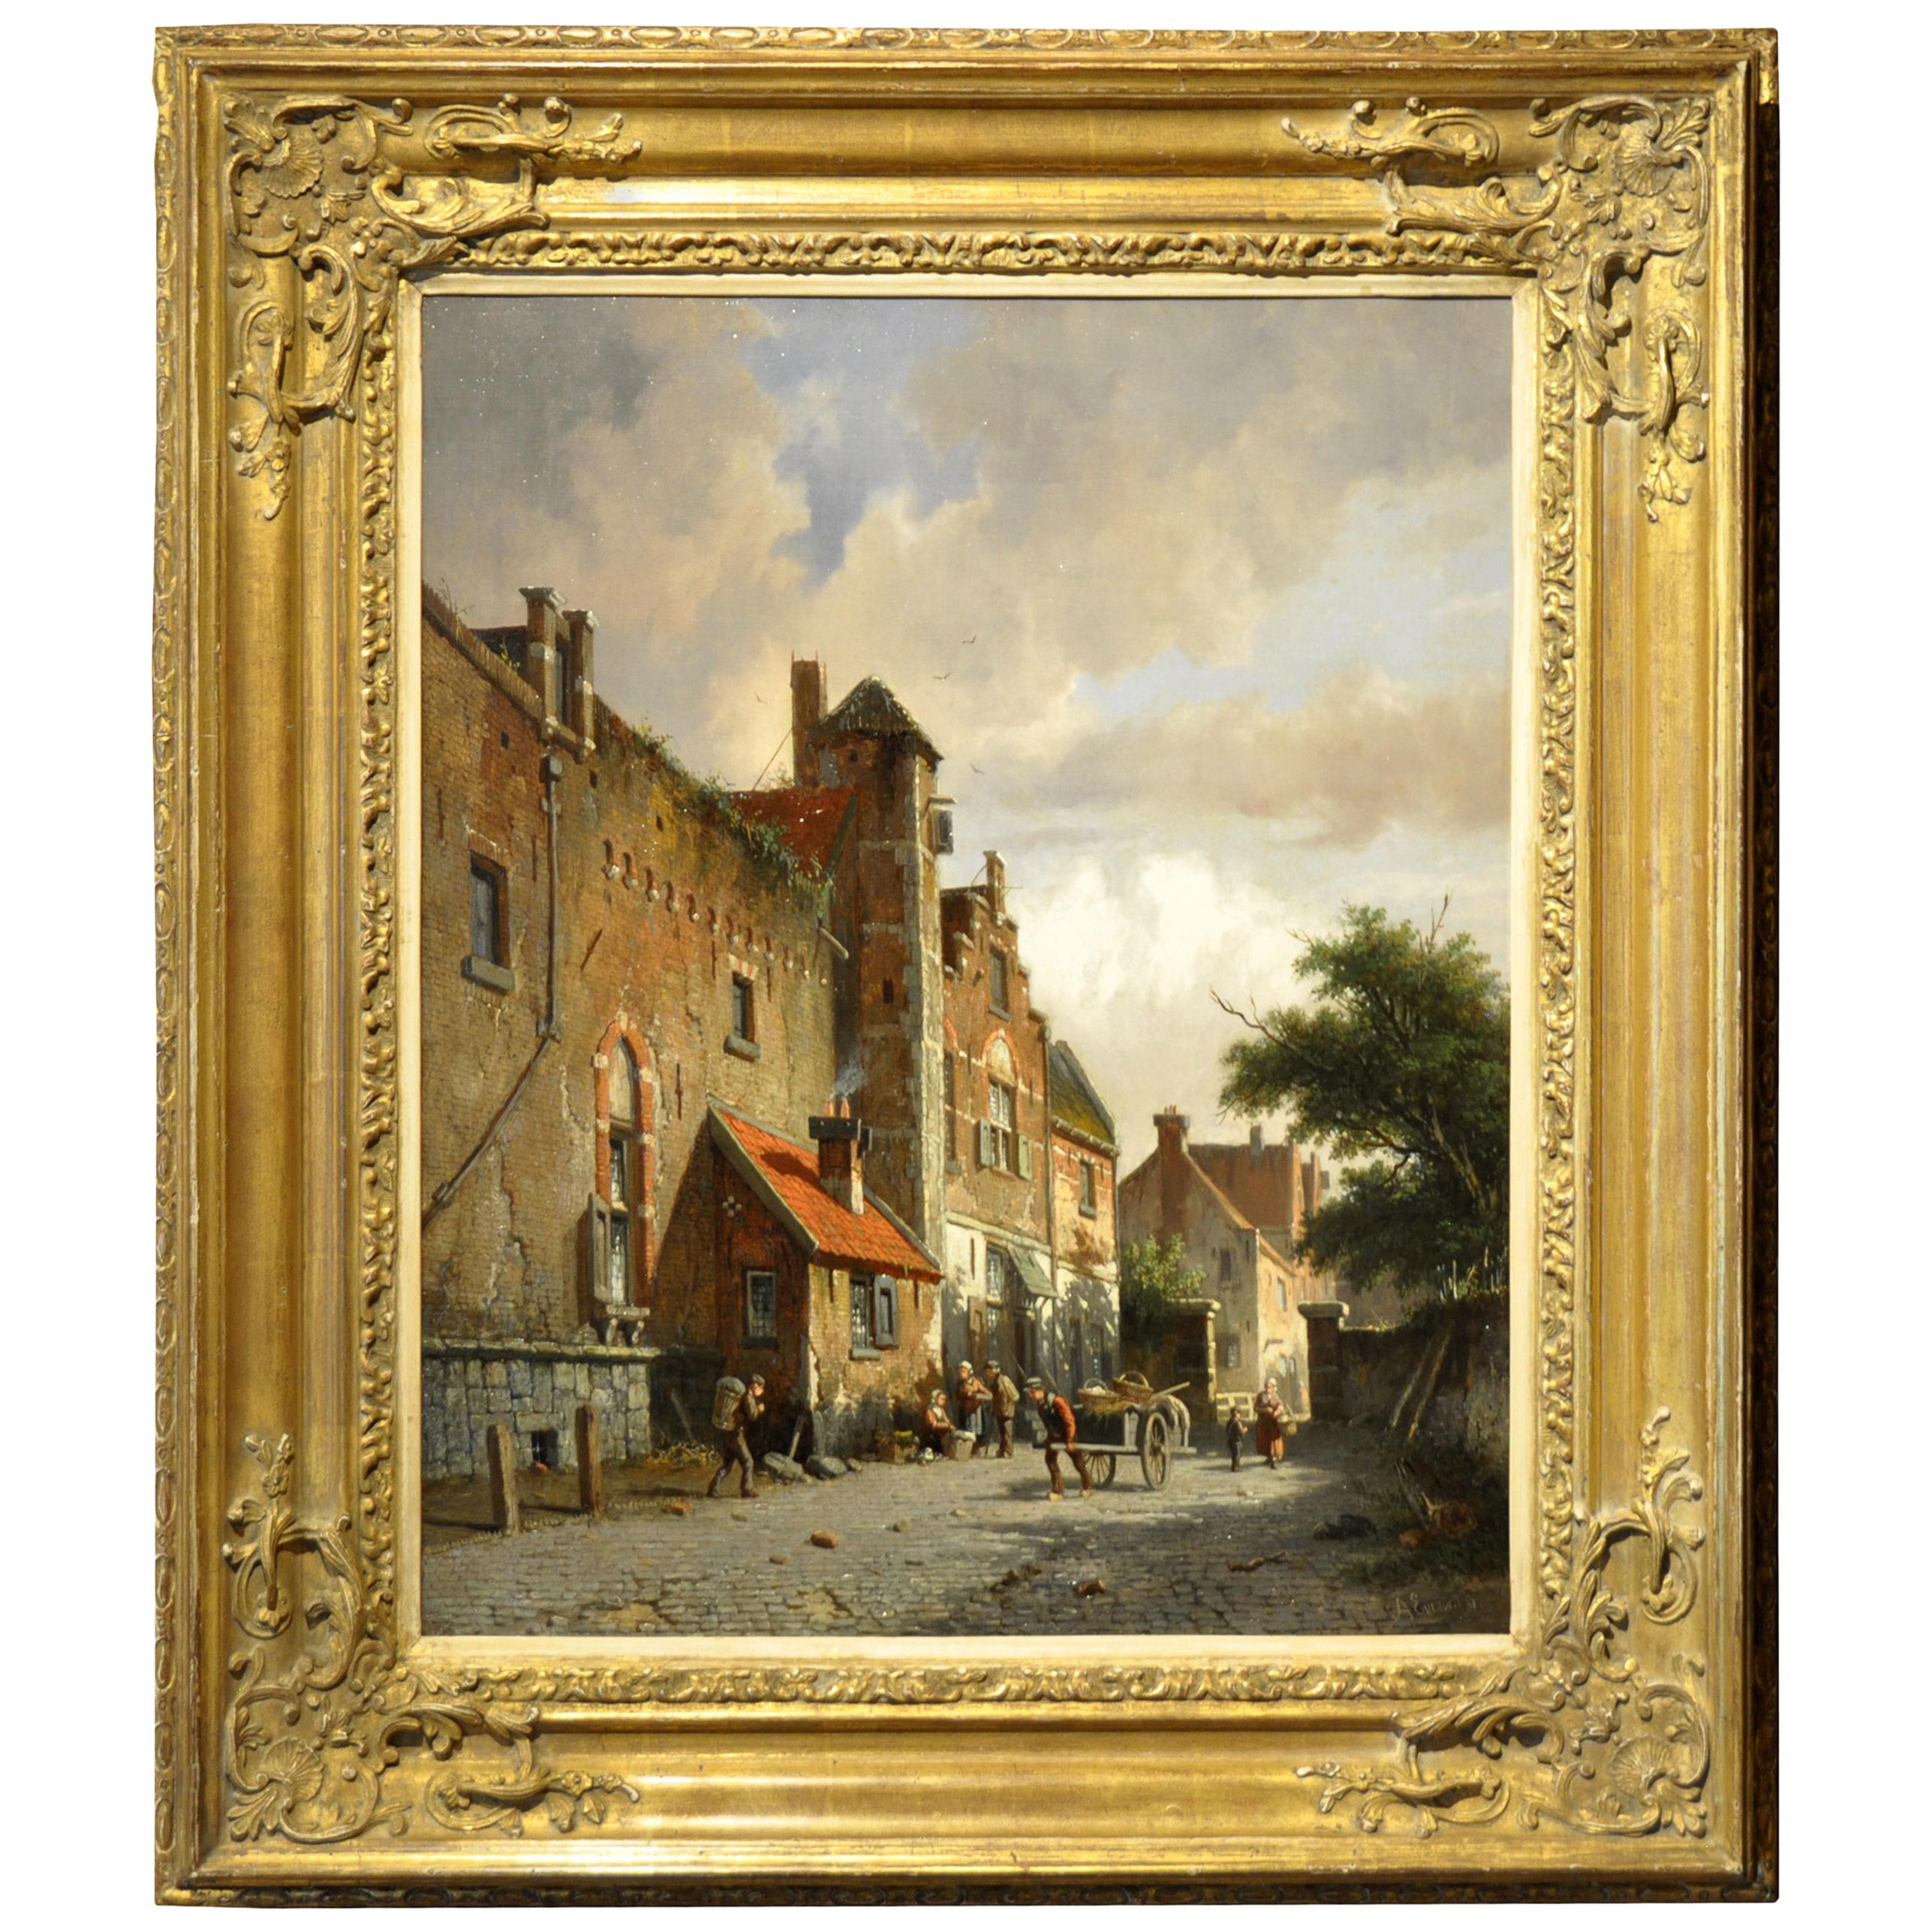 Unique 19th Century Oil Painting (57.5 x 47 cm) by Dutch Painter A. Eversen For Sale